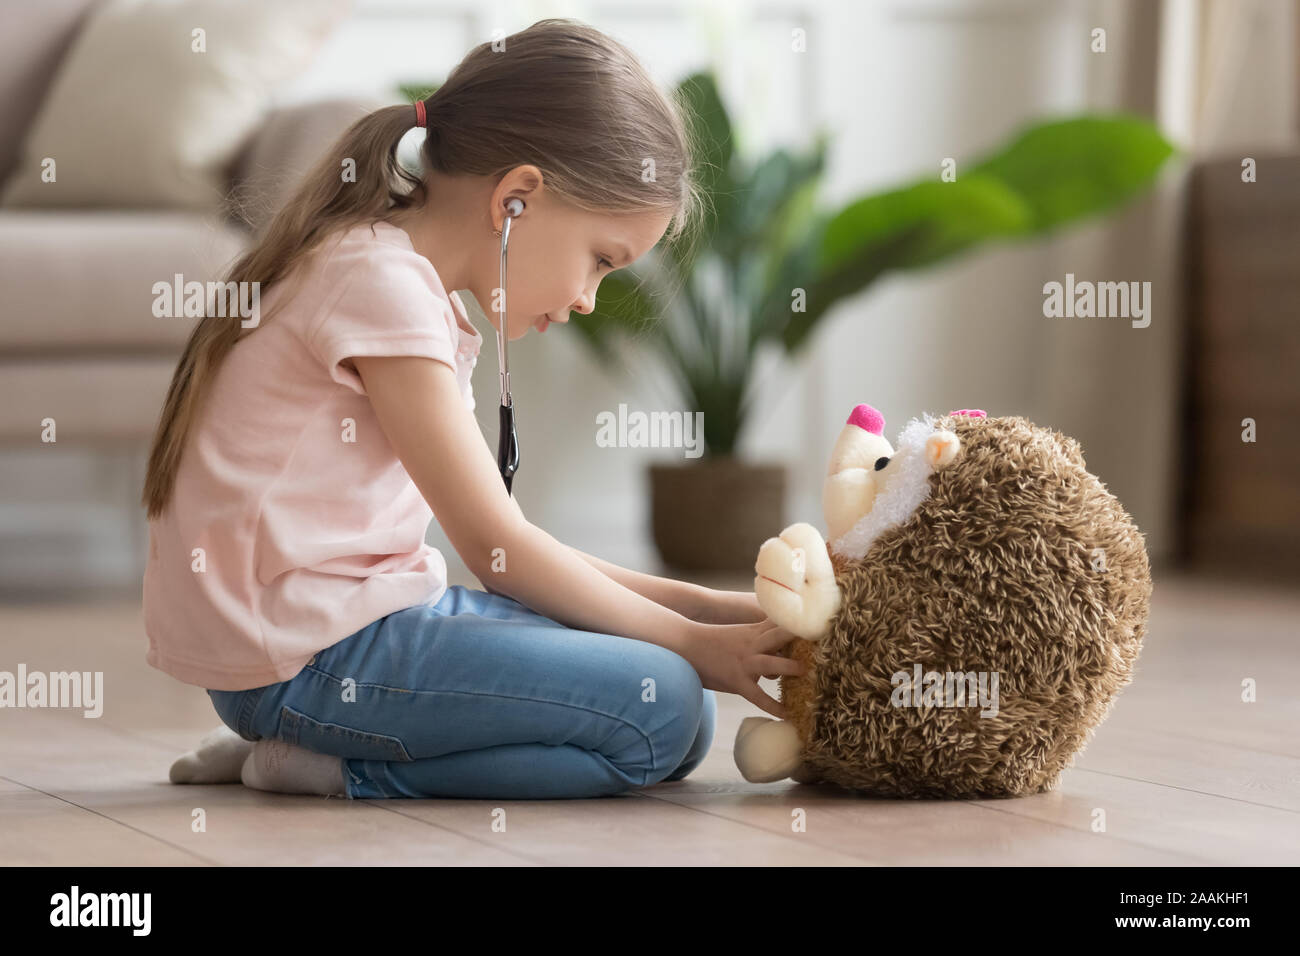 Carino bambina gioca medico gioco con hedgehog giocattolo Foto Stock